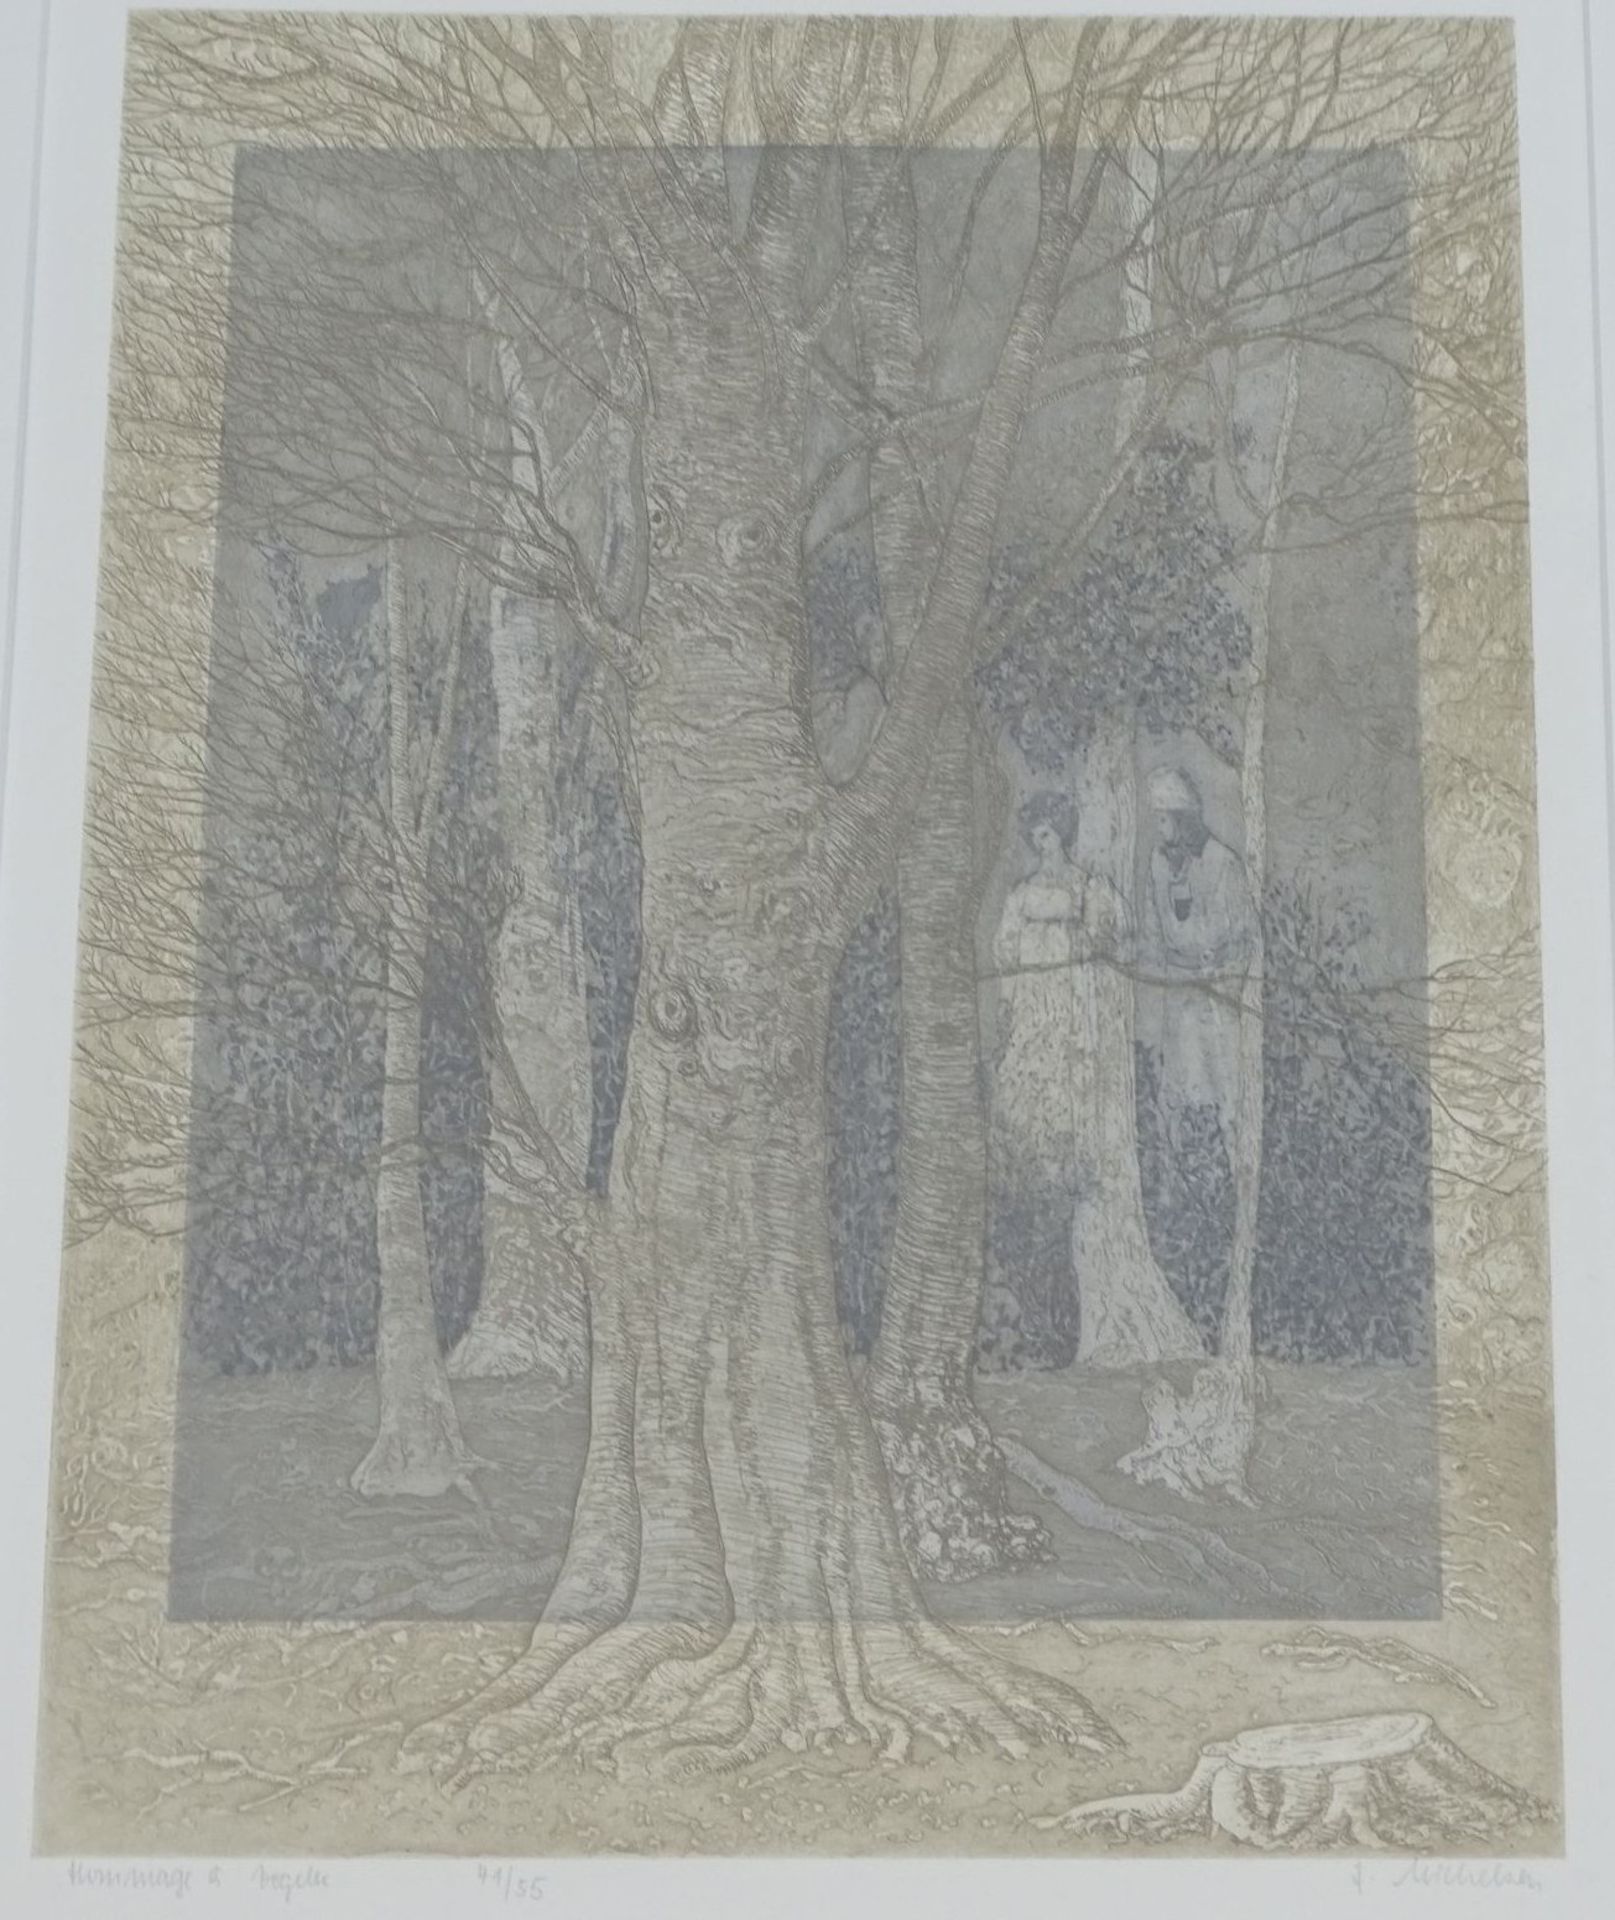 Friederike MICHELSEN (1923) "Hommage a Vogeler", Lithografie, Nr. 41/55, Lithografie, ger/Glas,